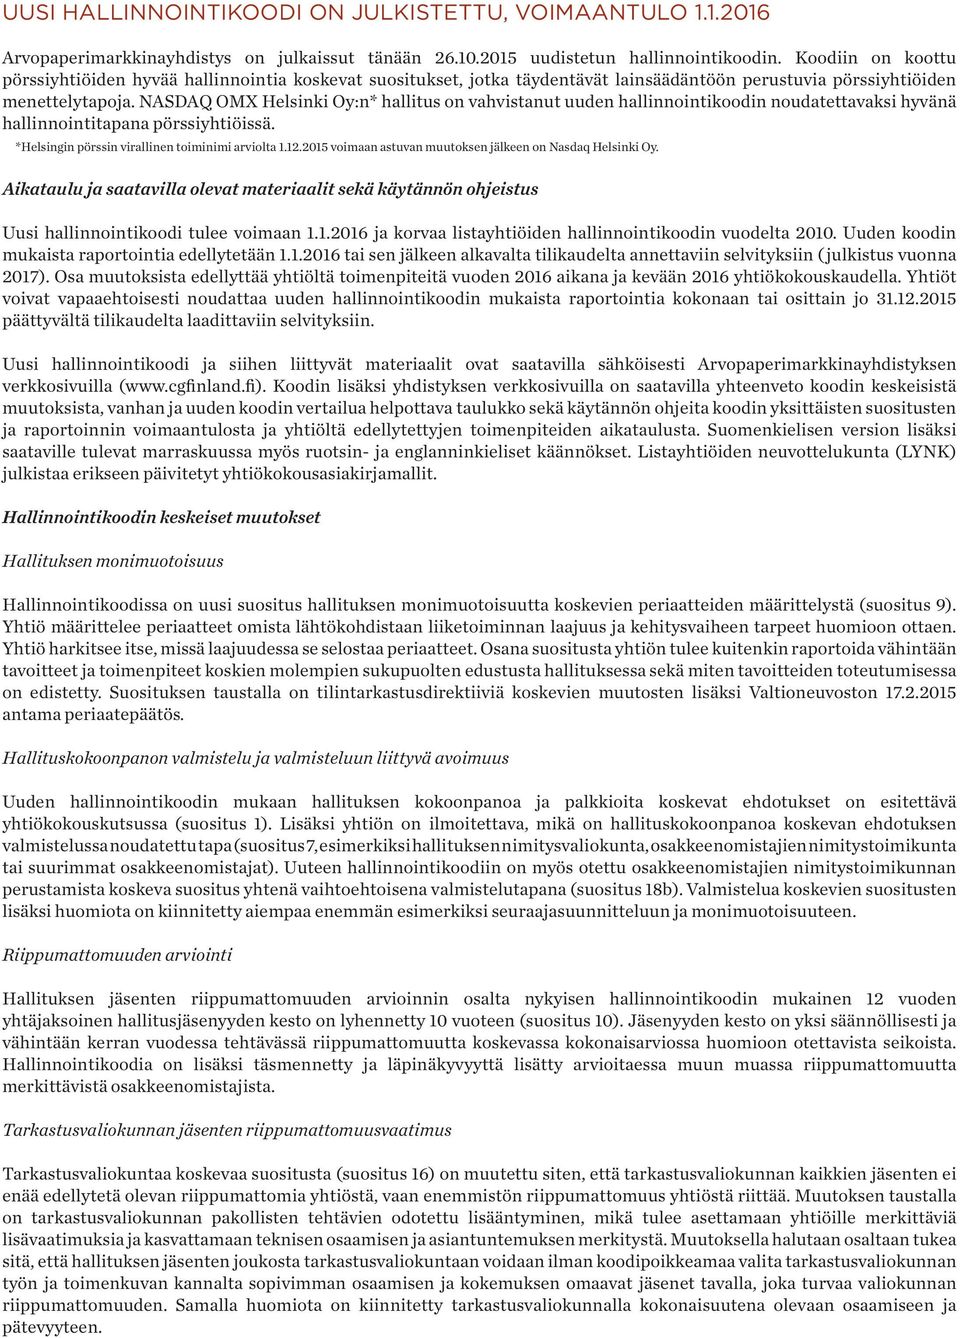 NASDAQ OMX Helsinki Oy:n* hallitus on vahvistanut uuden hallinnointikoodin noudatettavaksi hyvänä hallinnointitapana pörssiyhtiöissä. *Helsingin pörssin virallinen toiminimi arviolta 1.12.